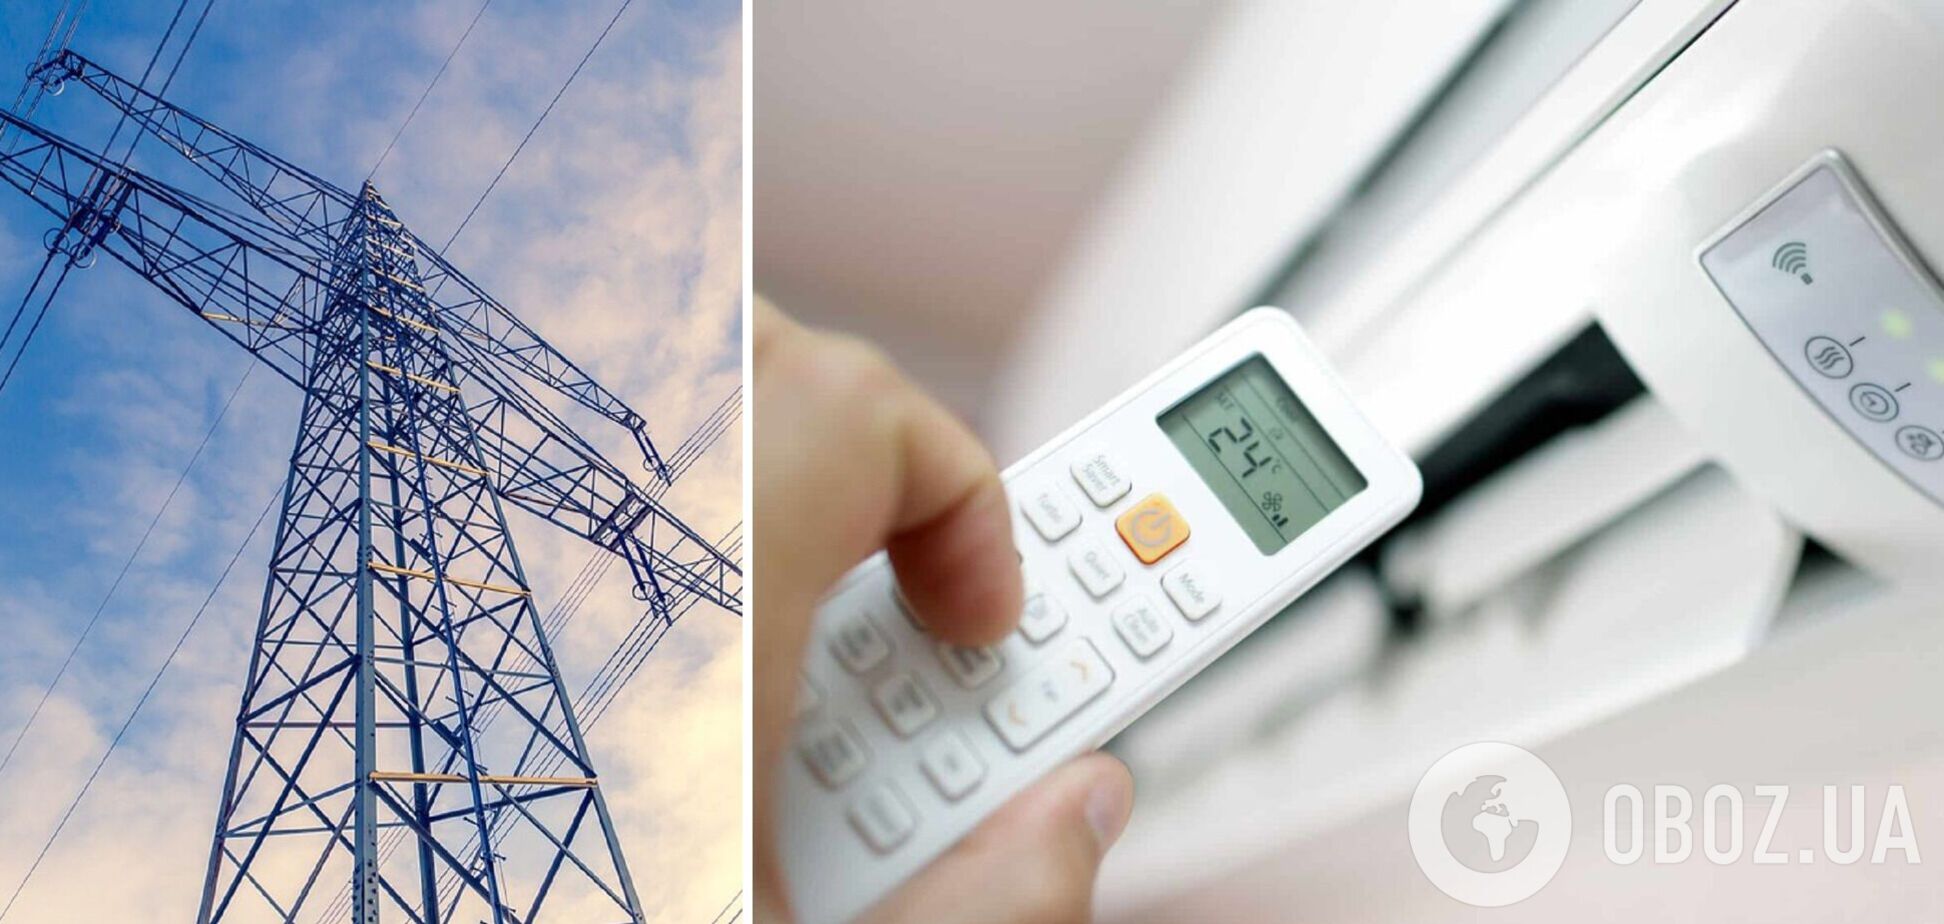 Экономить электроэнергию на кондиционерах просят украинцев